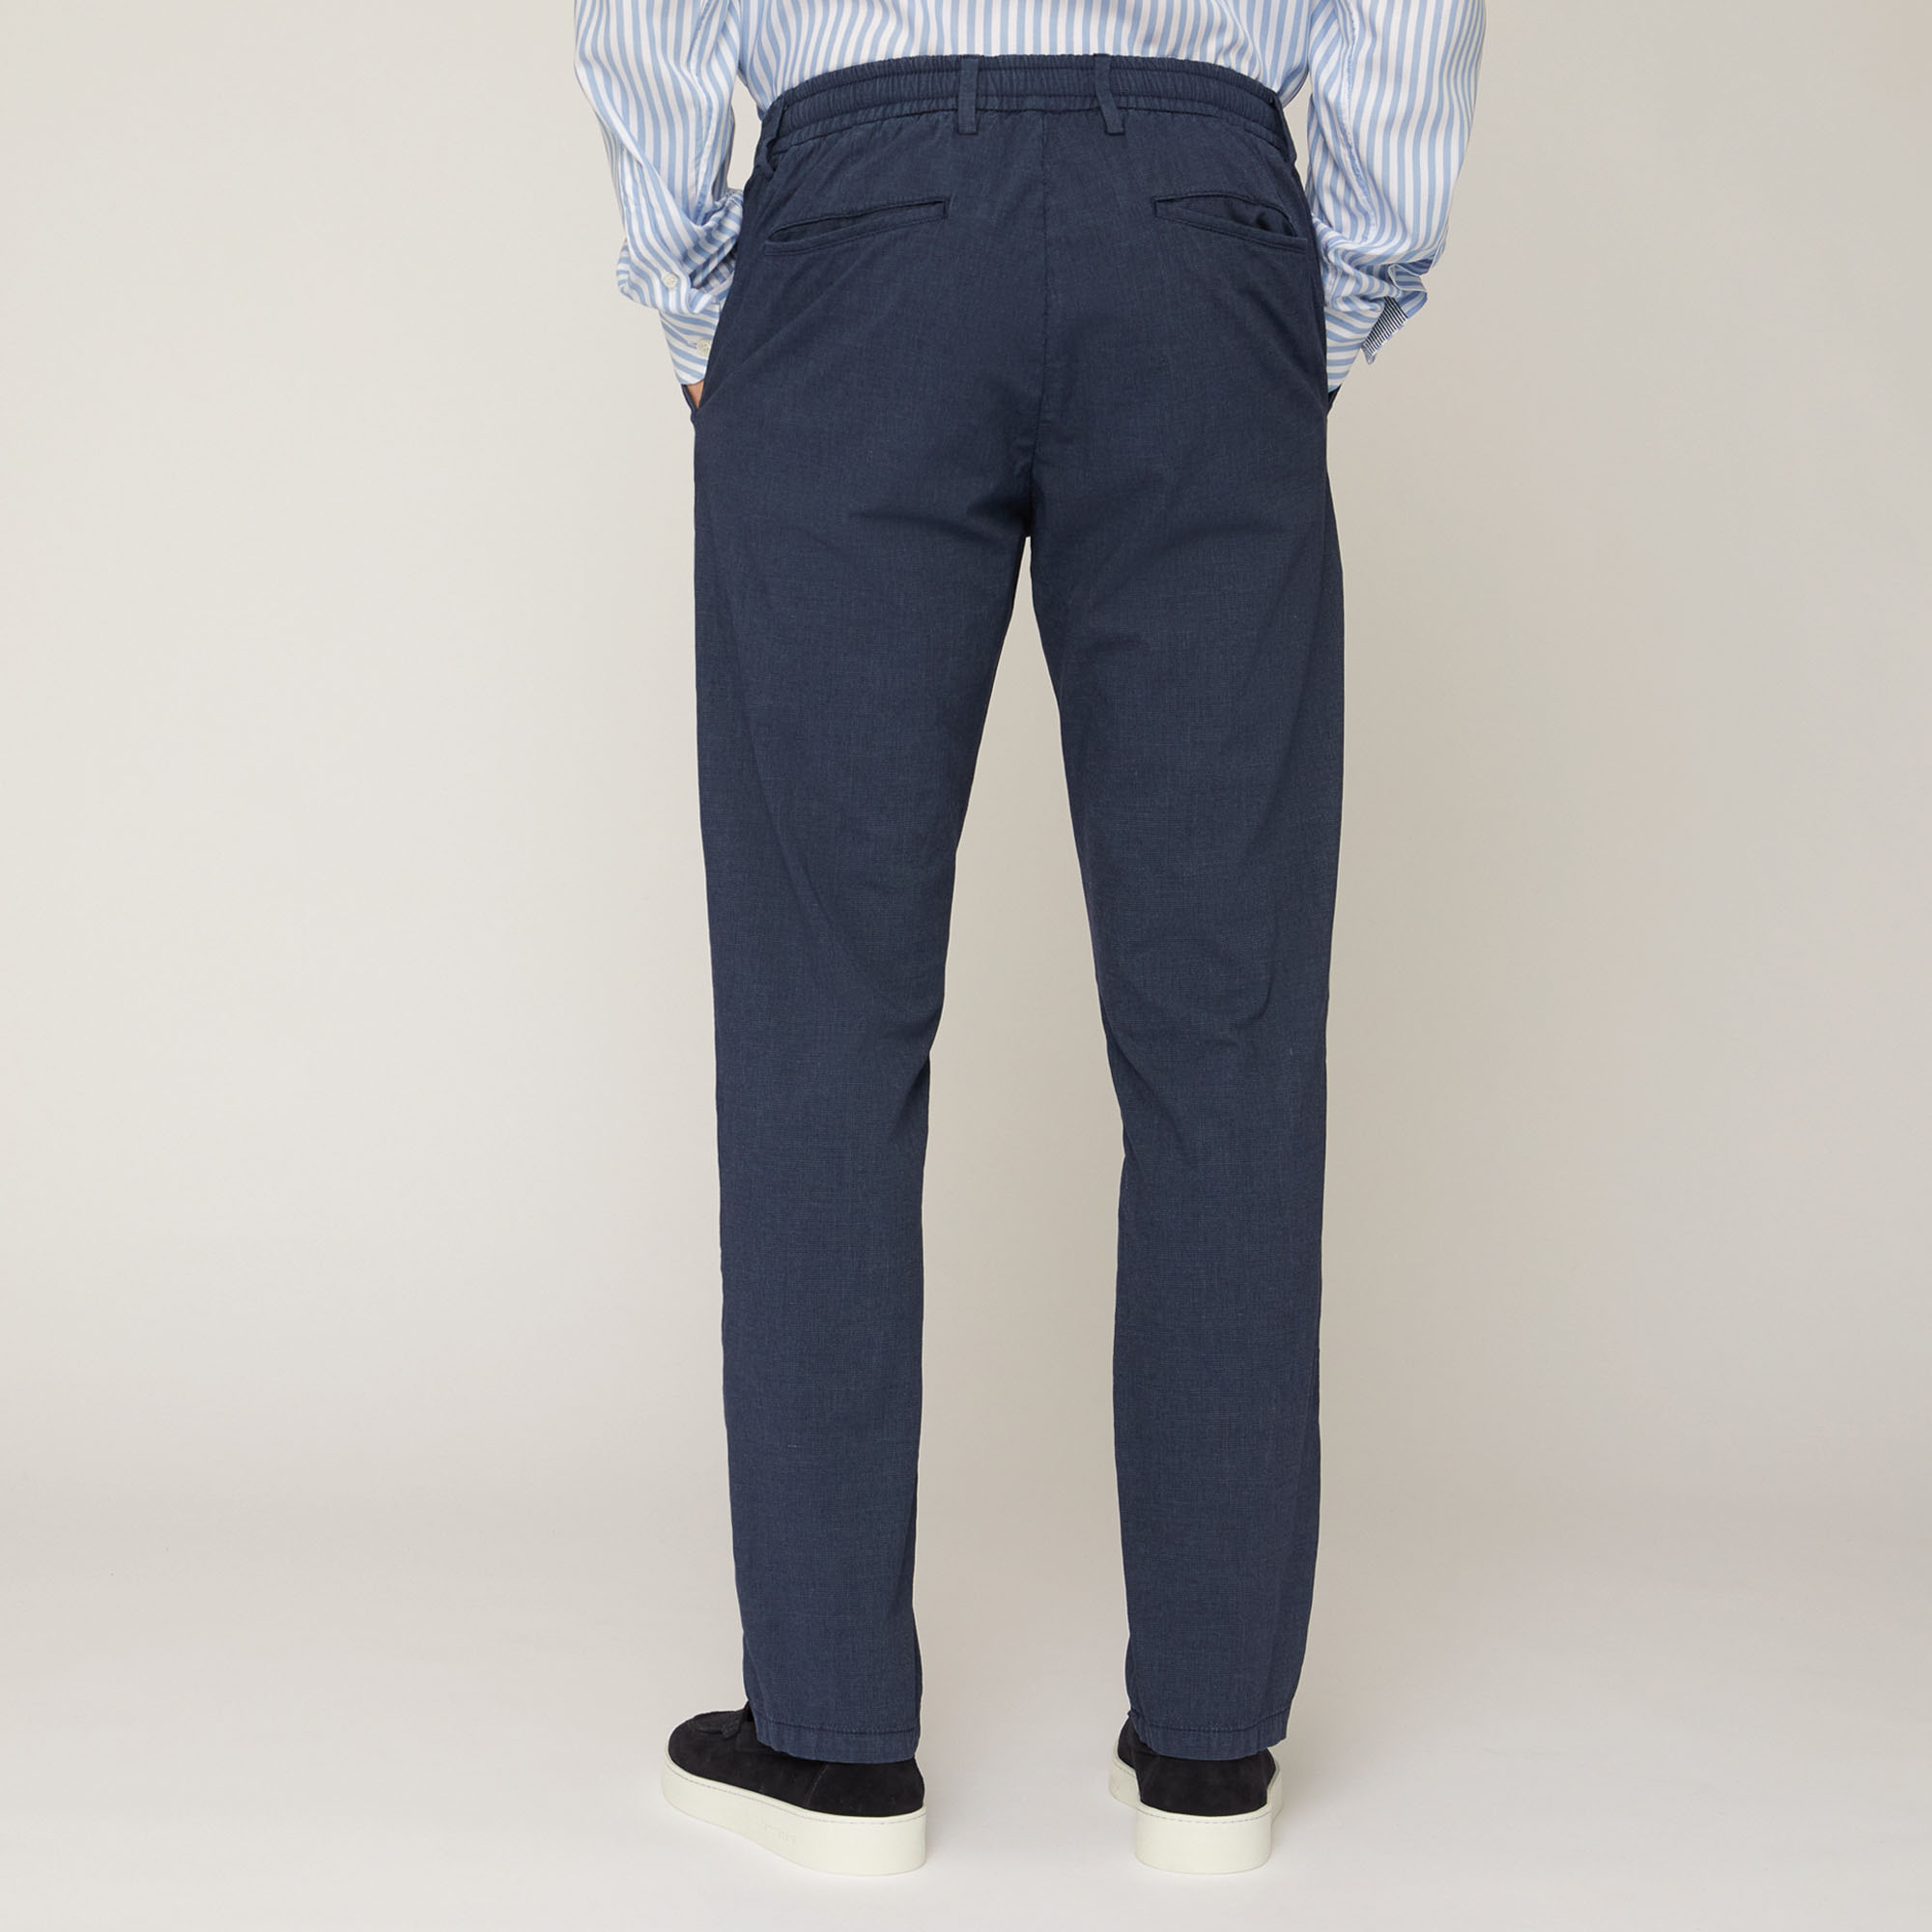 Cotton-Blend Jogging Pants, Blue, large image number 1